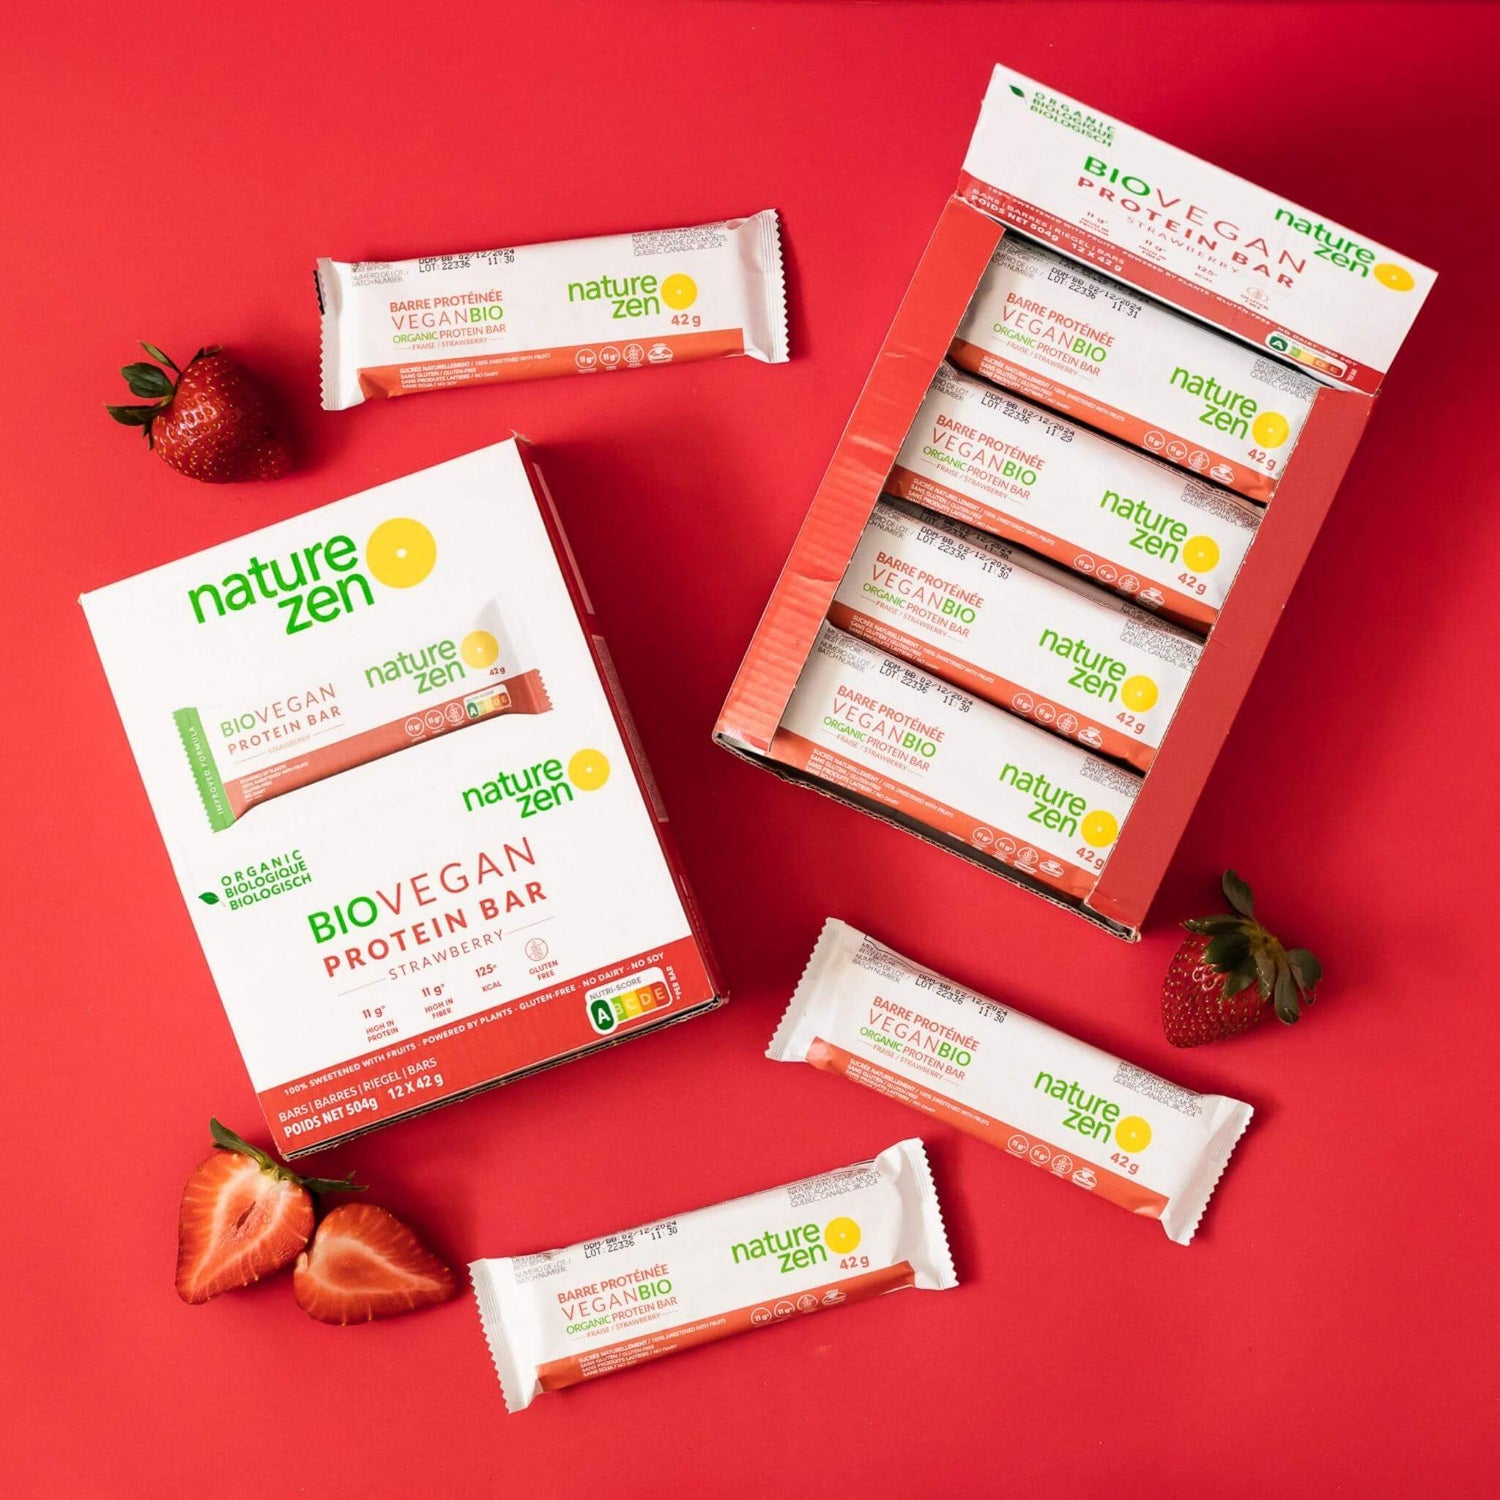 Nature Zen Organic Vegan Protein bars - Strawberry protein bars [New Recipe] box